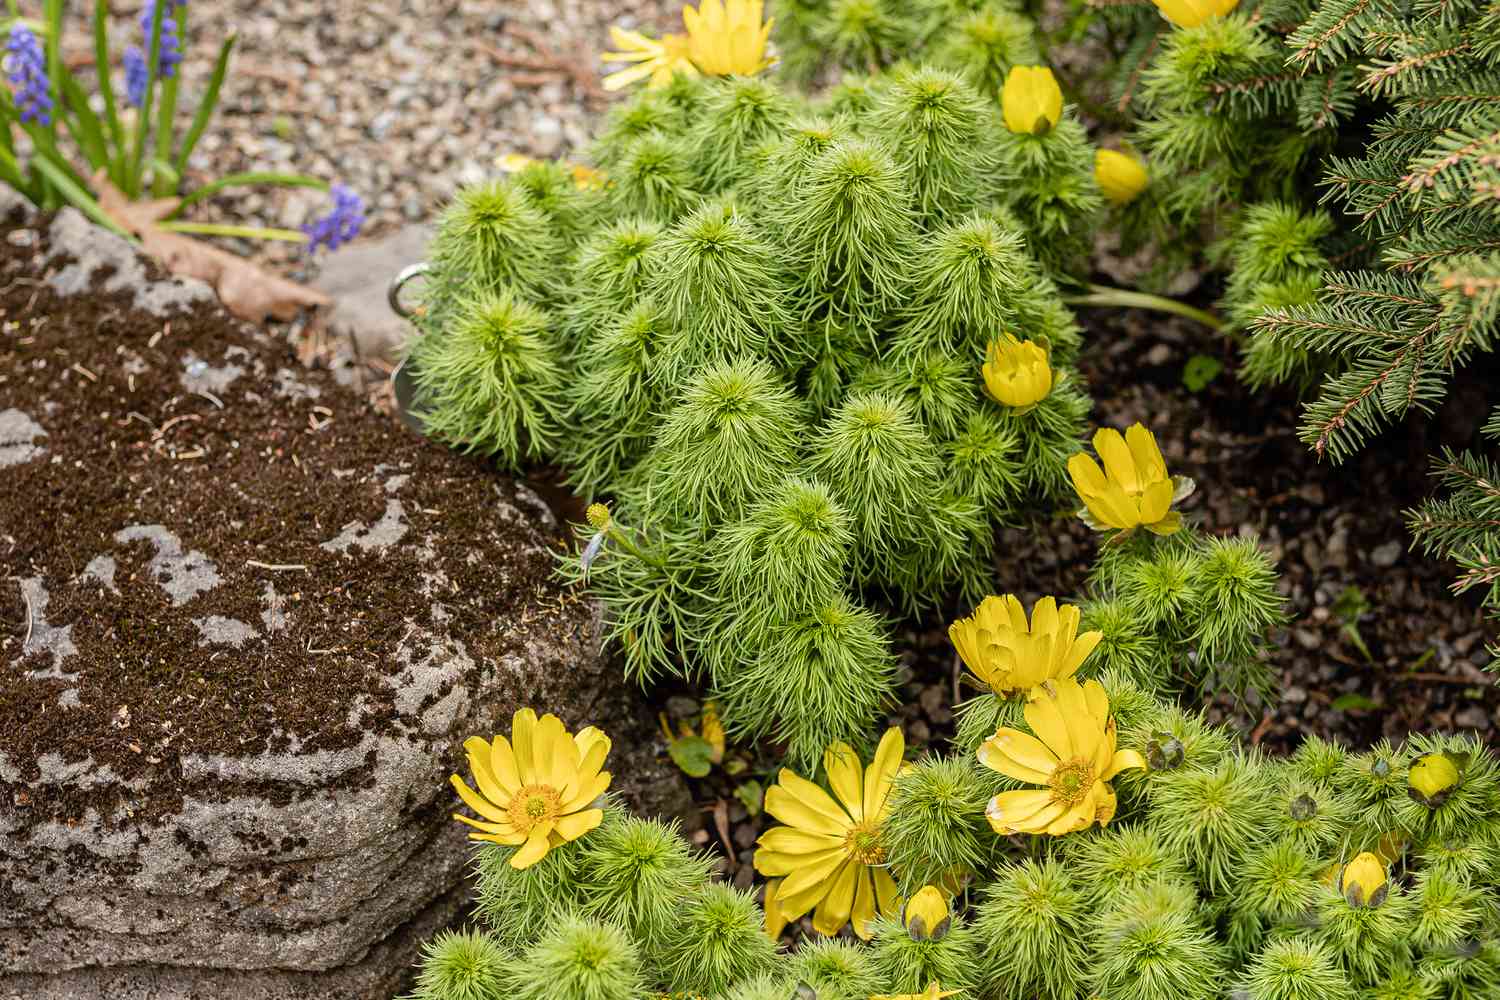 Planta paisajista Adonis con pequeñas flores amarillas rodeadas de un follaje similar al musgo